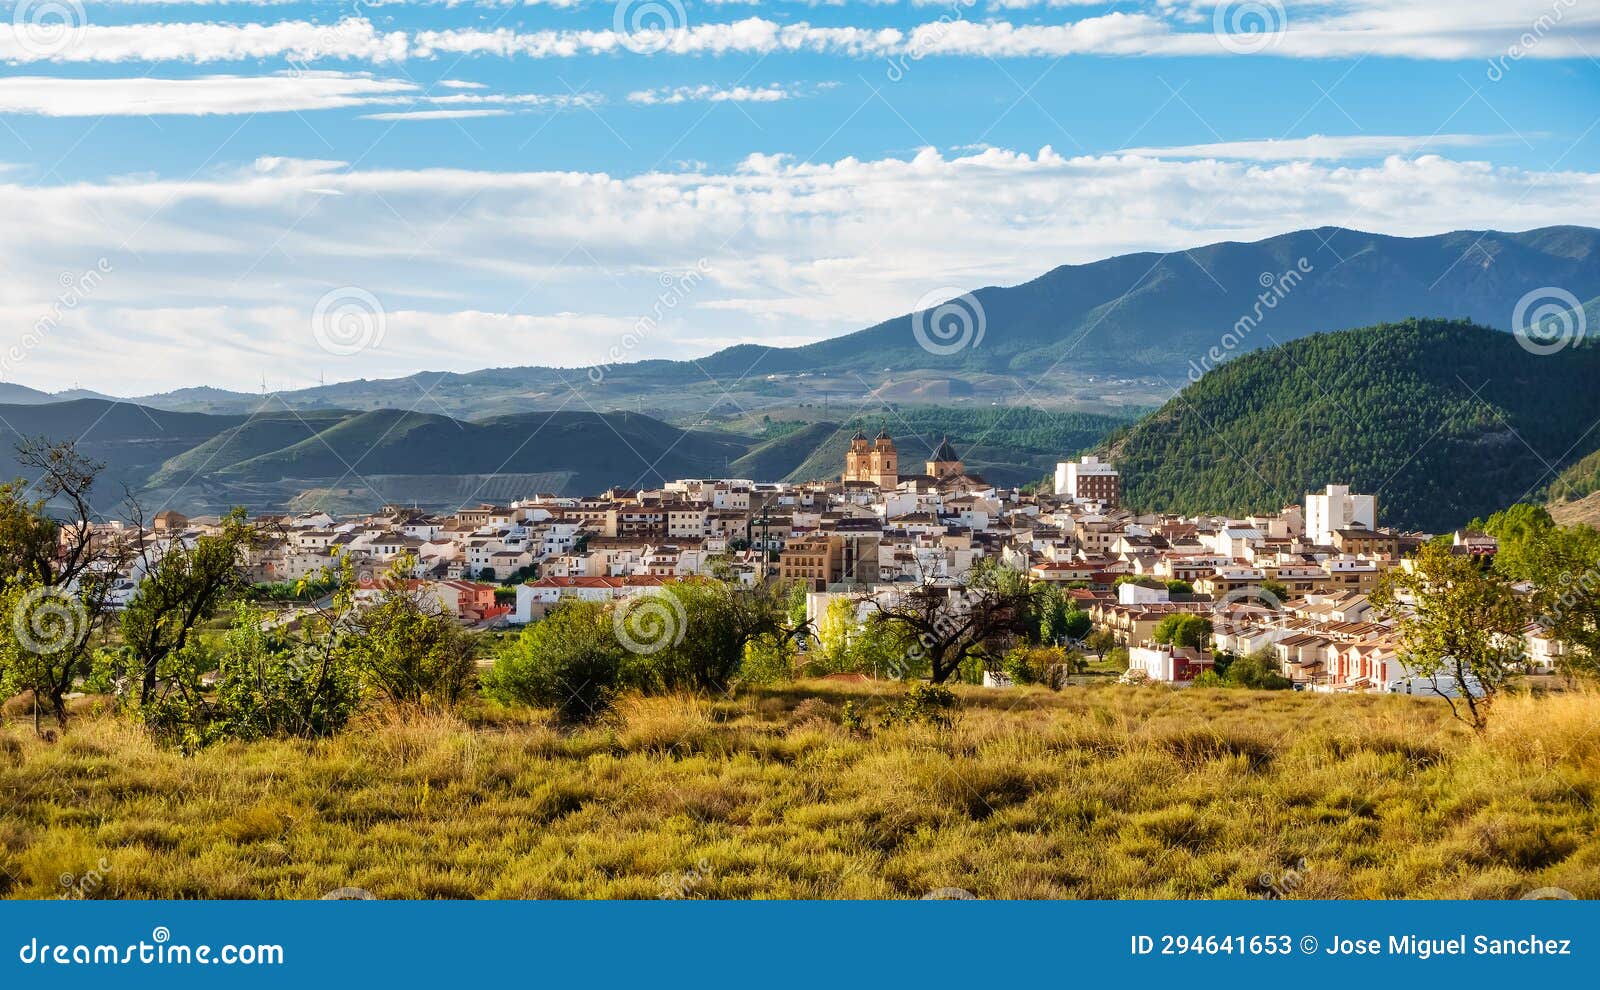 panoramic view of the andalusian white village next to the high mountains that surround it, velez rubio, almeria.